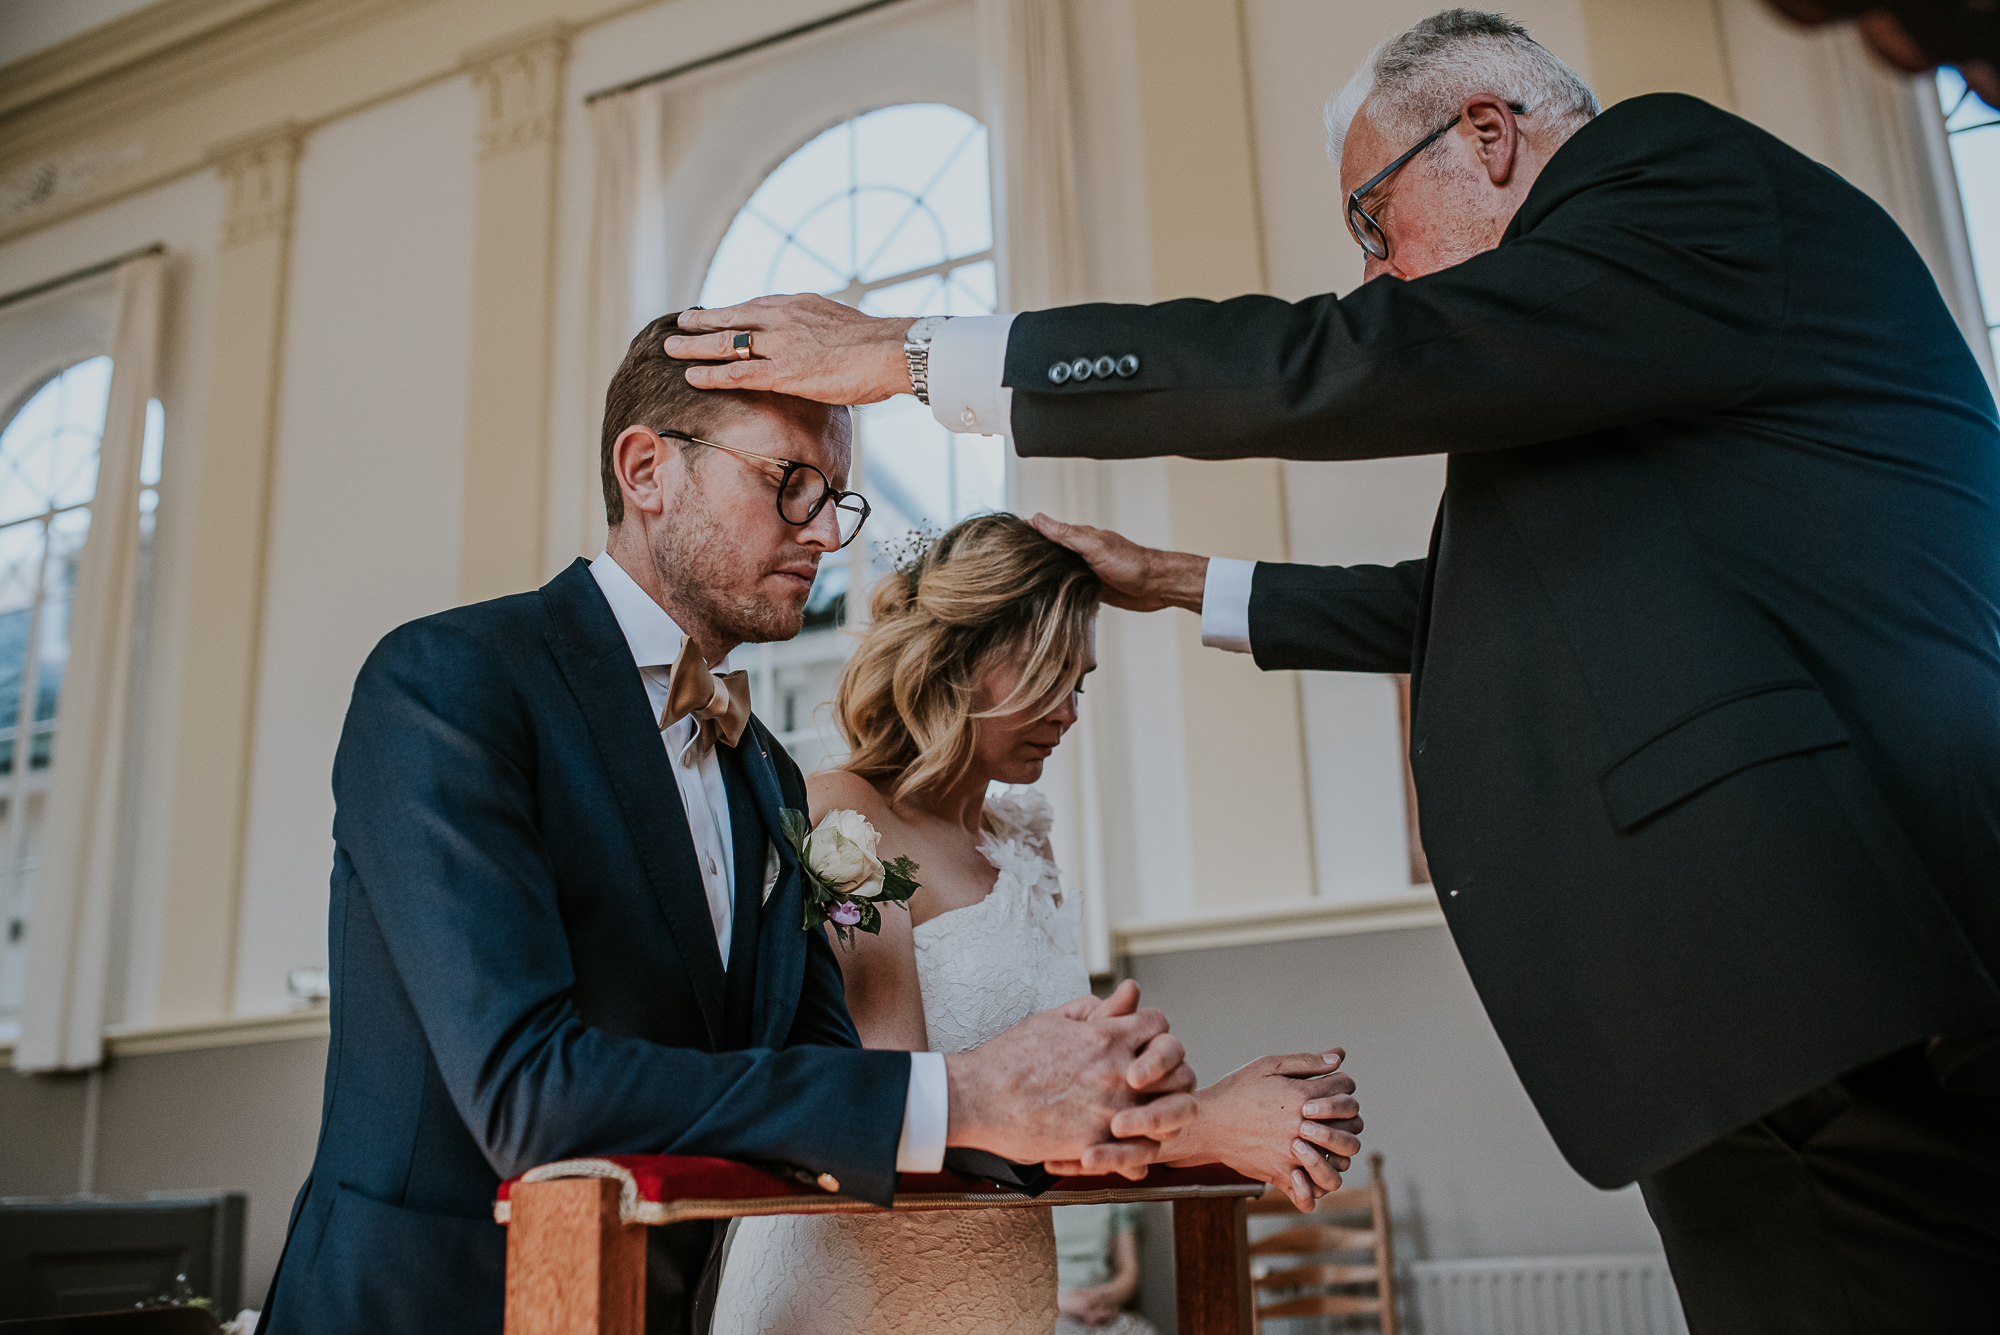 De voorganger geeft de kerkelijke zegening voor het huwelijk. Huwelijksfotografie door huwelijksfotograaf Nickie Fotografie uit Dokkum, Friesland.